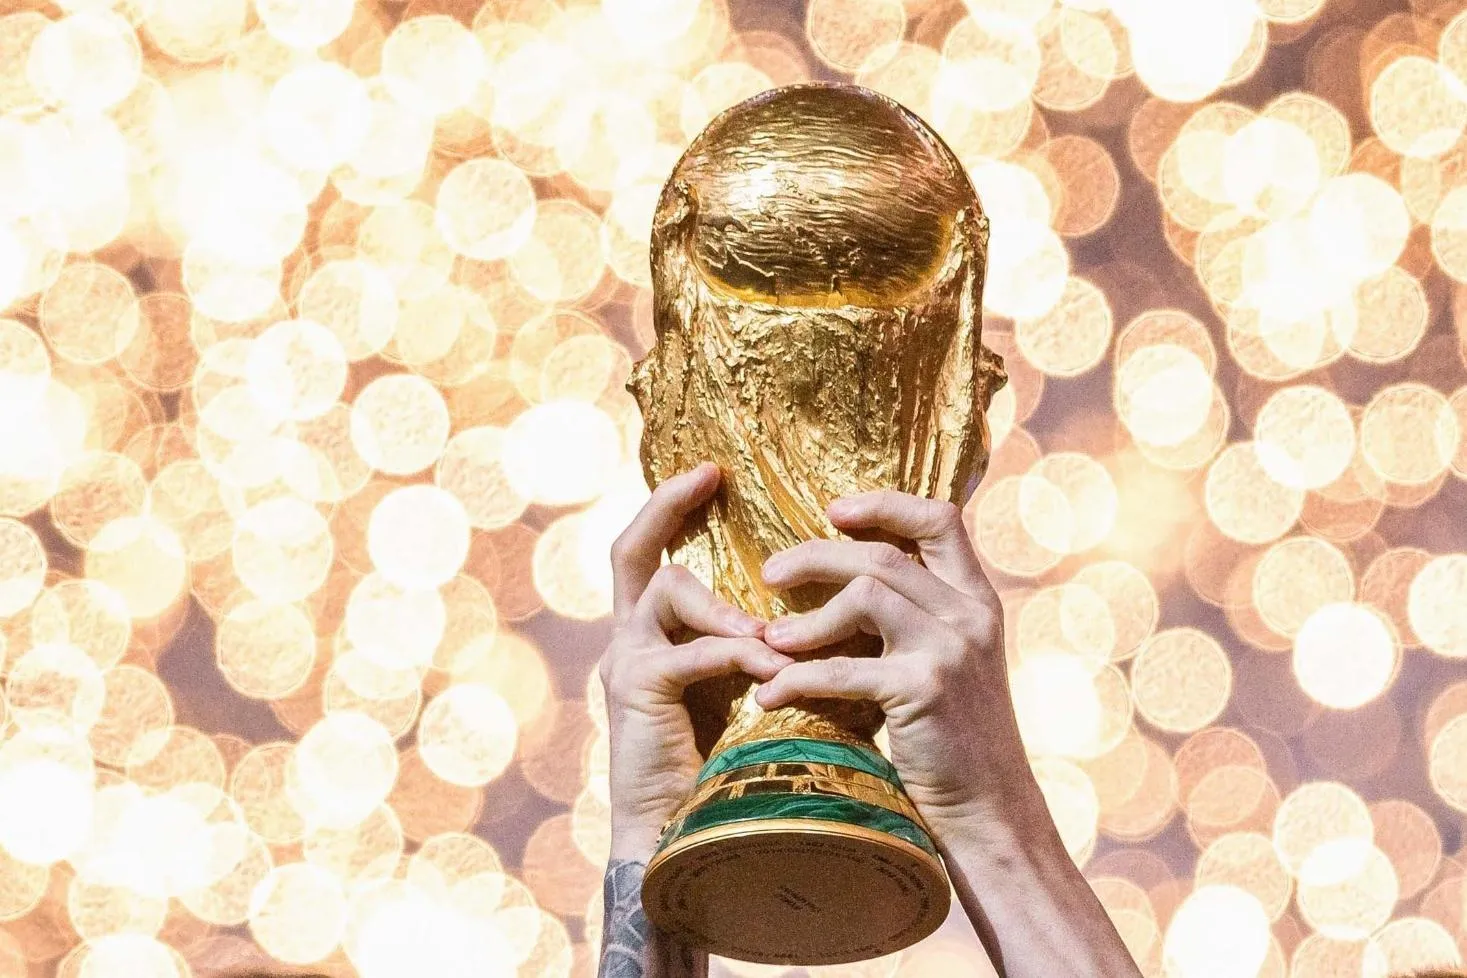 Copa do Mundo de 2026 terá 104 jogos e 48 seleções, diz jornalista